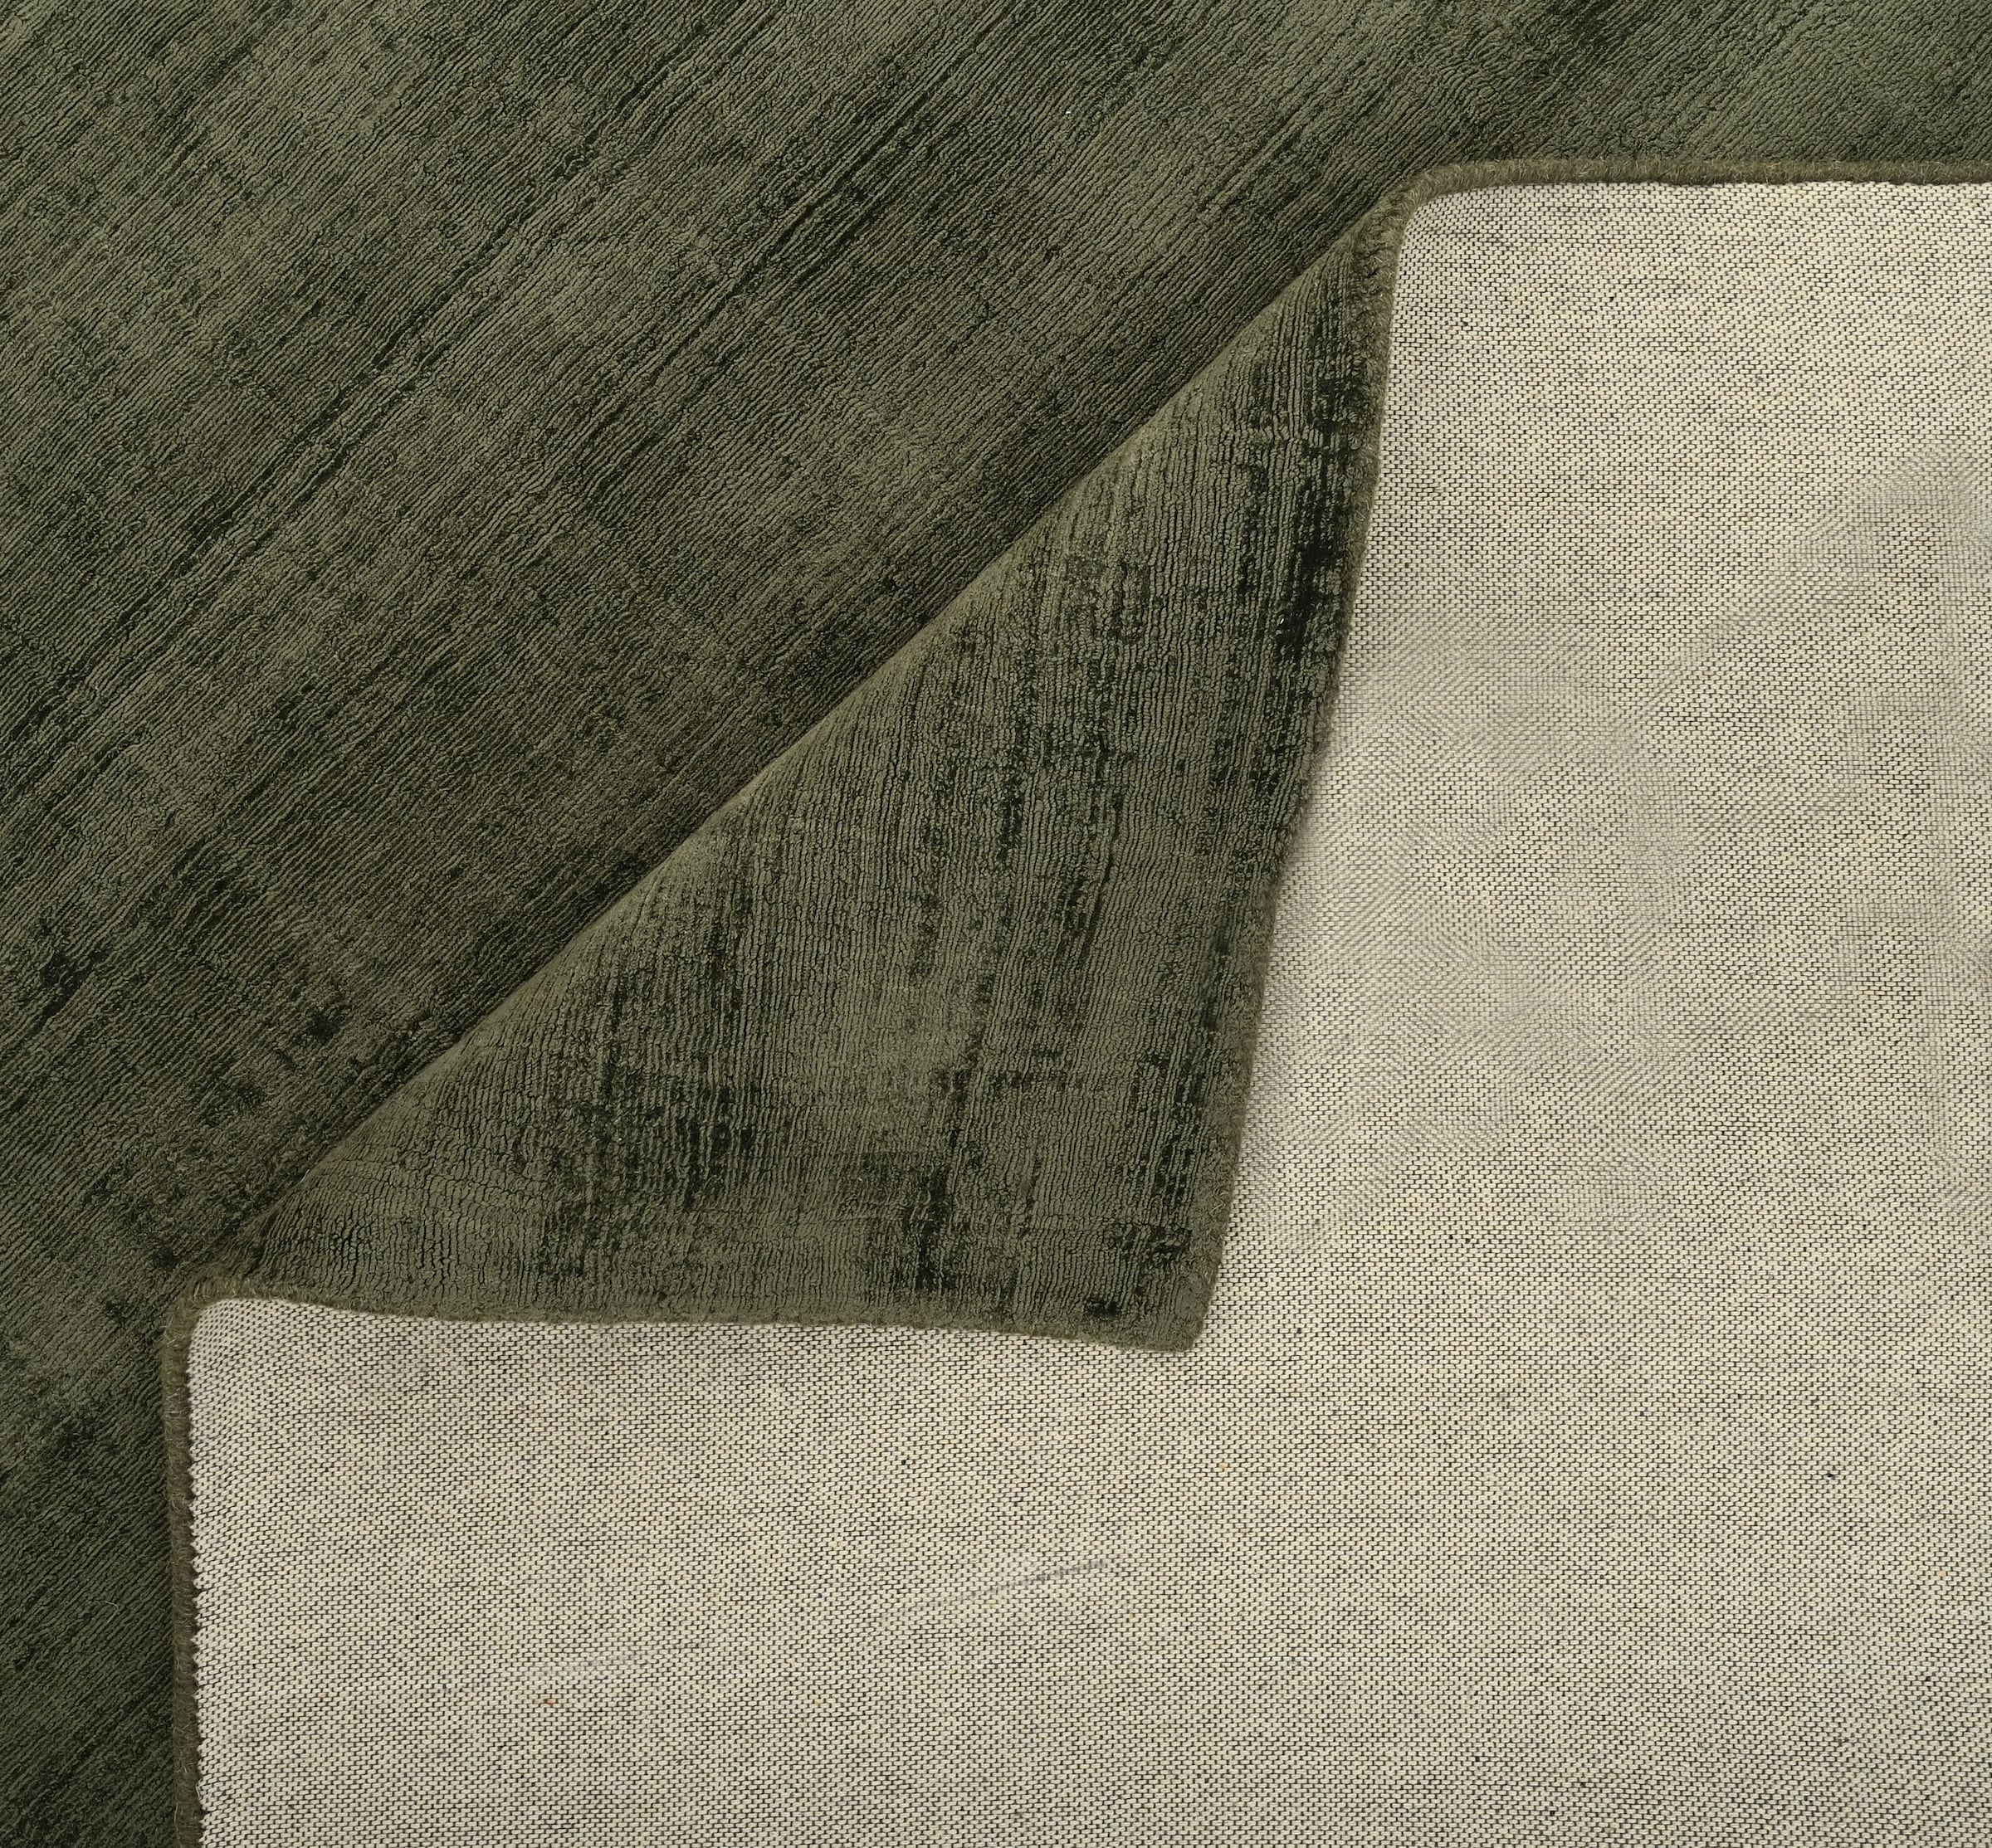 Leonique Teppich »Soley, Kurzflor-Teppiche, handgewebter Viskose-Teppich«, rechteckig, farblich changierend, Handweb, Wohnzimmer, Schlafzimmer, Esszimmer